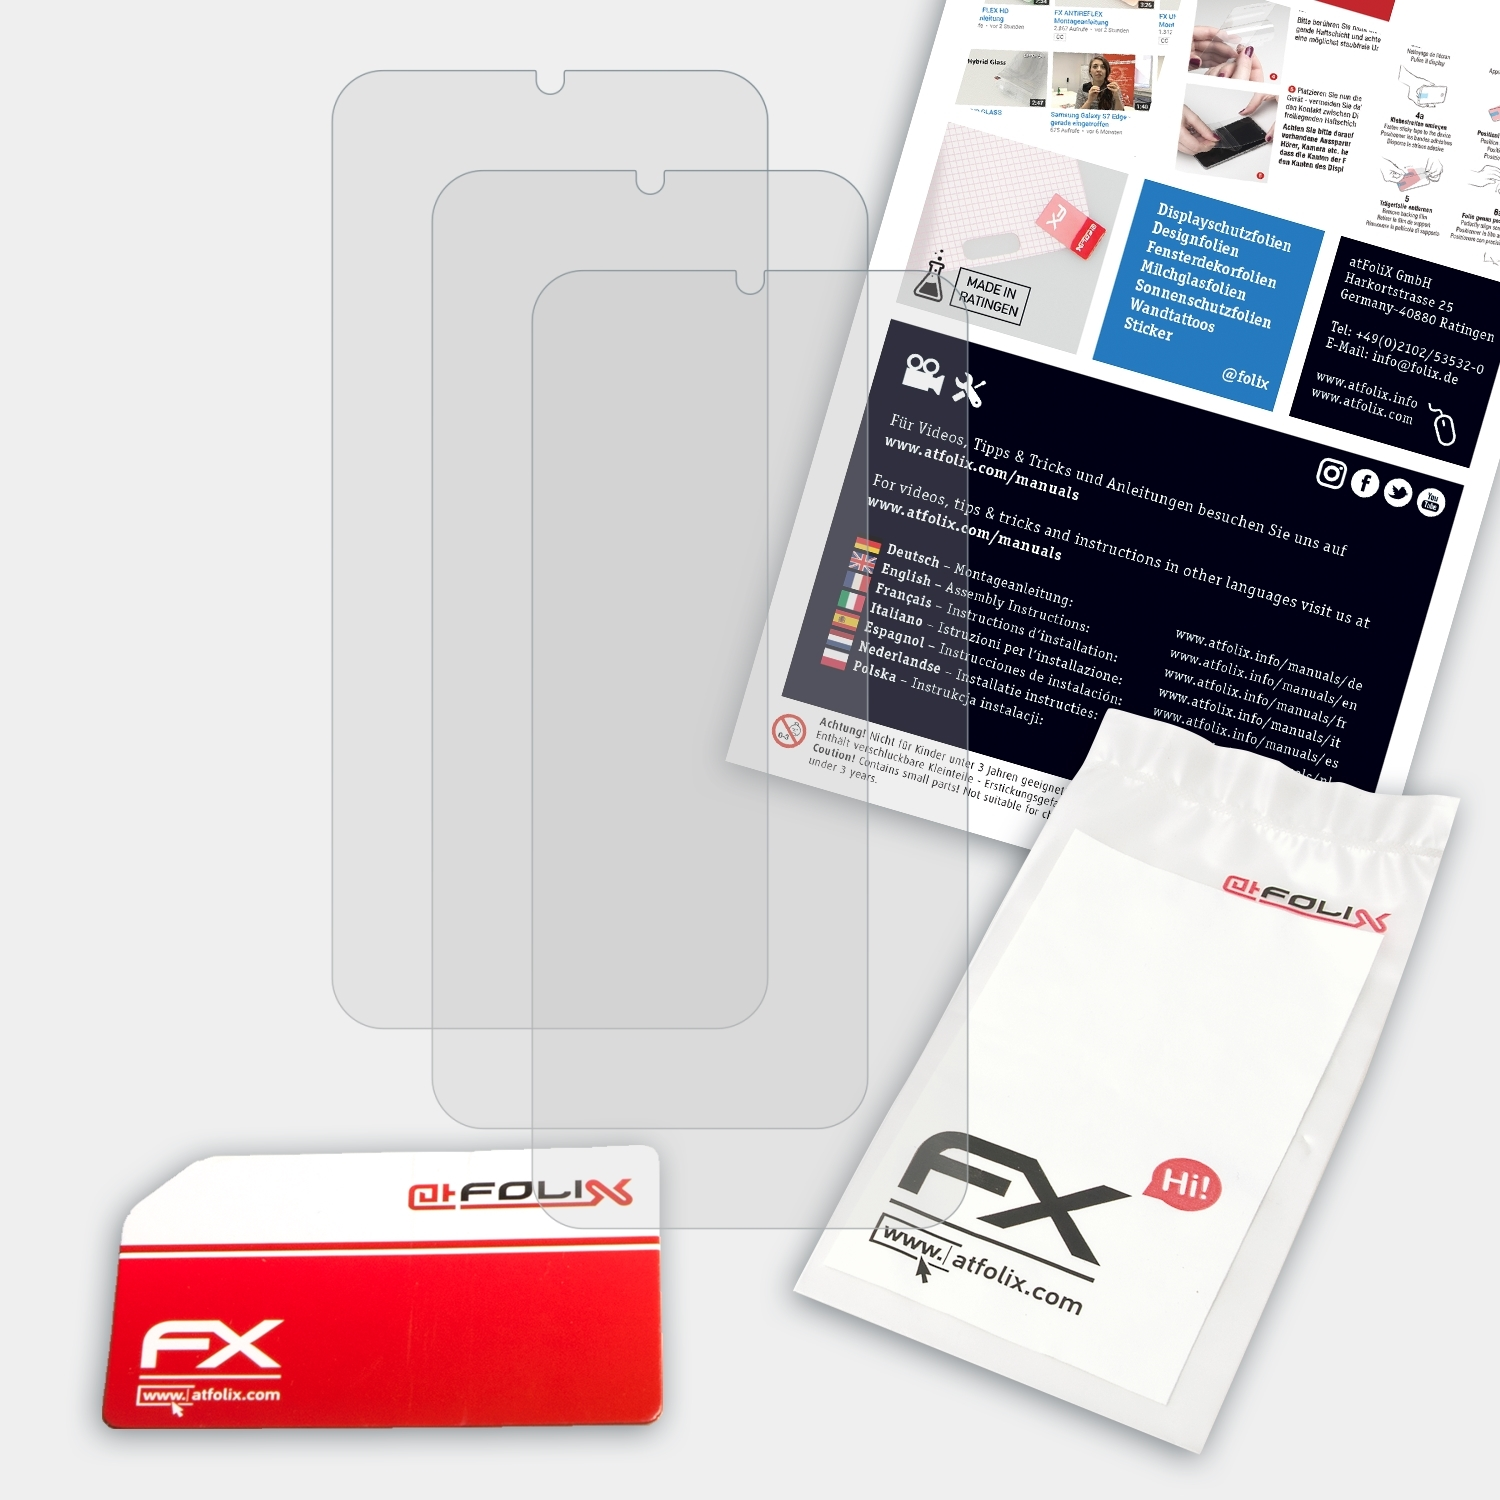 ATFOLIX 3x FX-Antireflex Camon Pro) Displayschutz(für Tecno 12